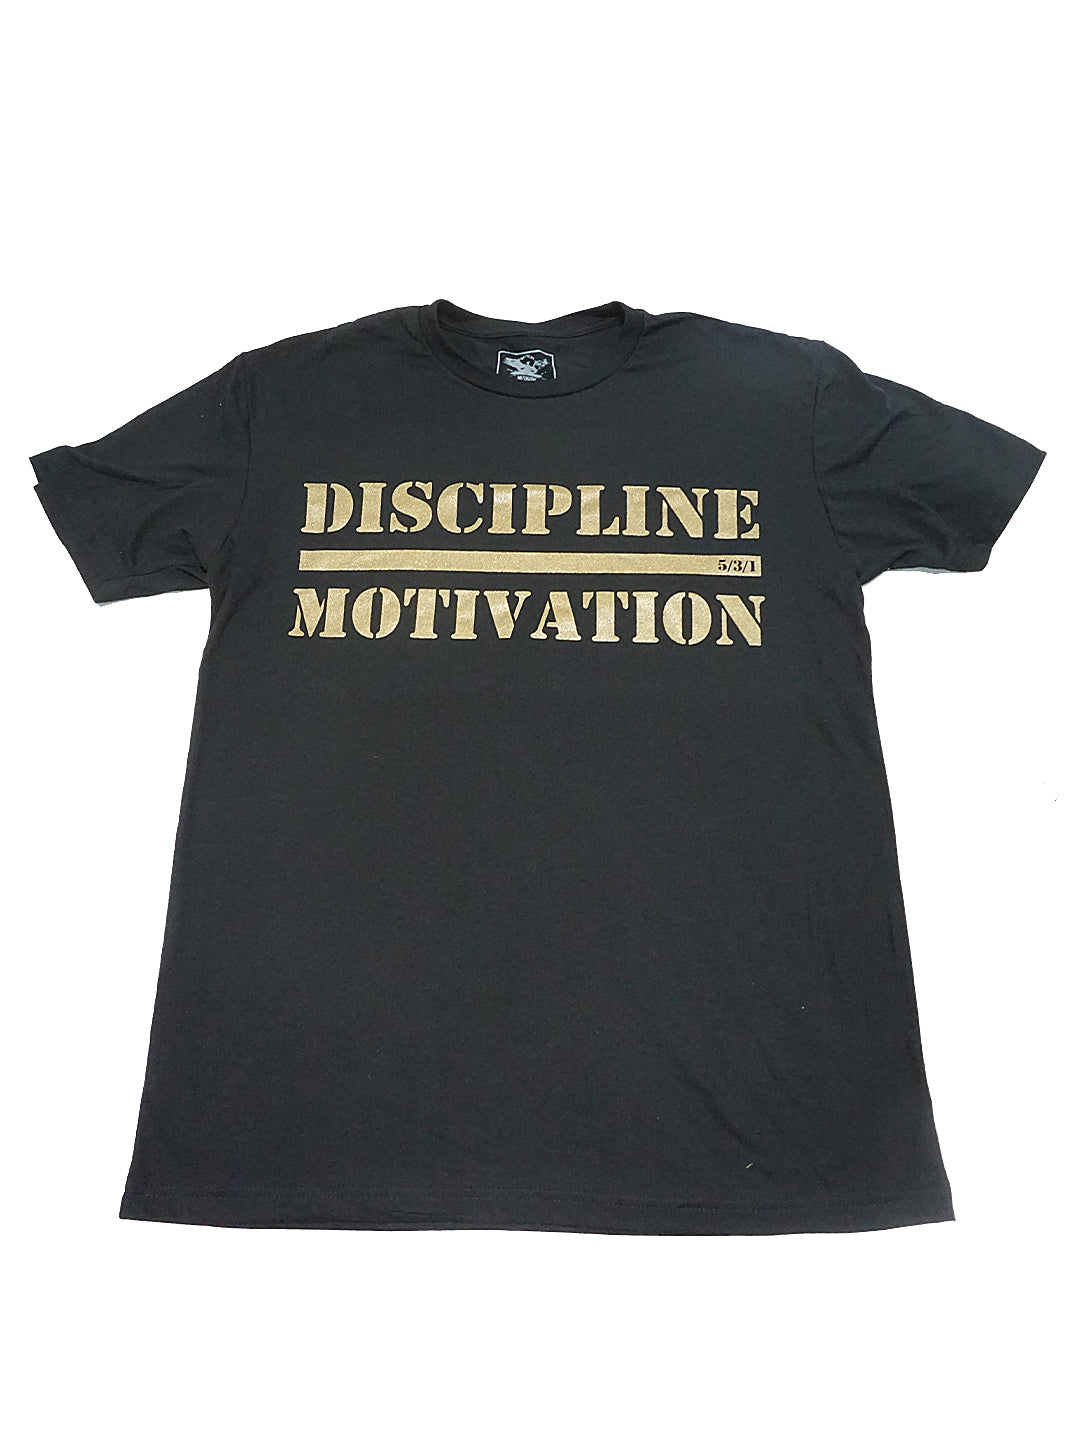 Discipline Over Motivation Tee - Black/Gold